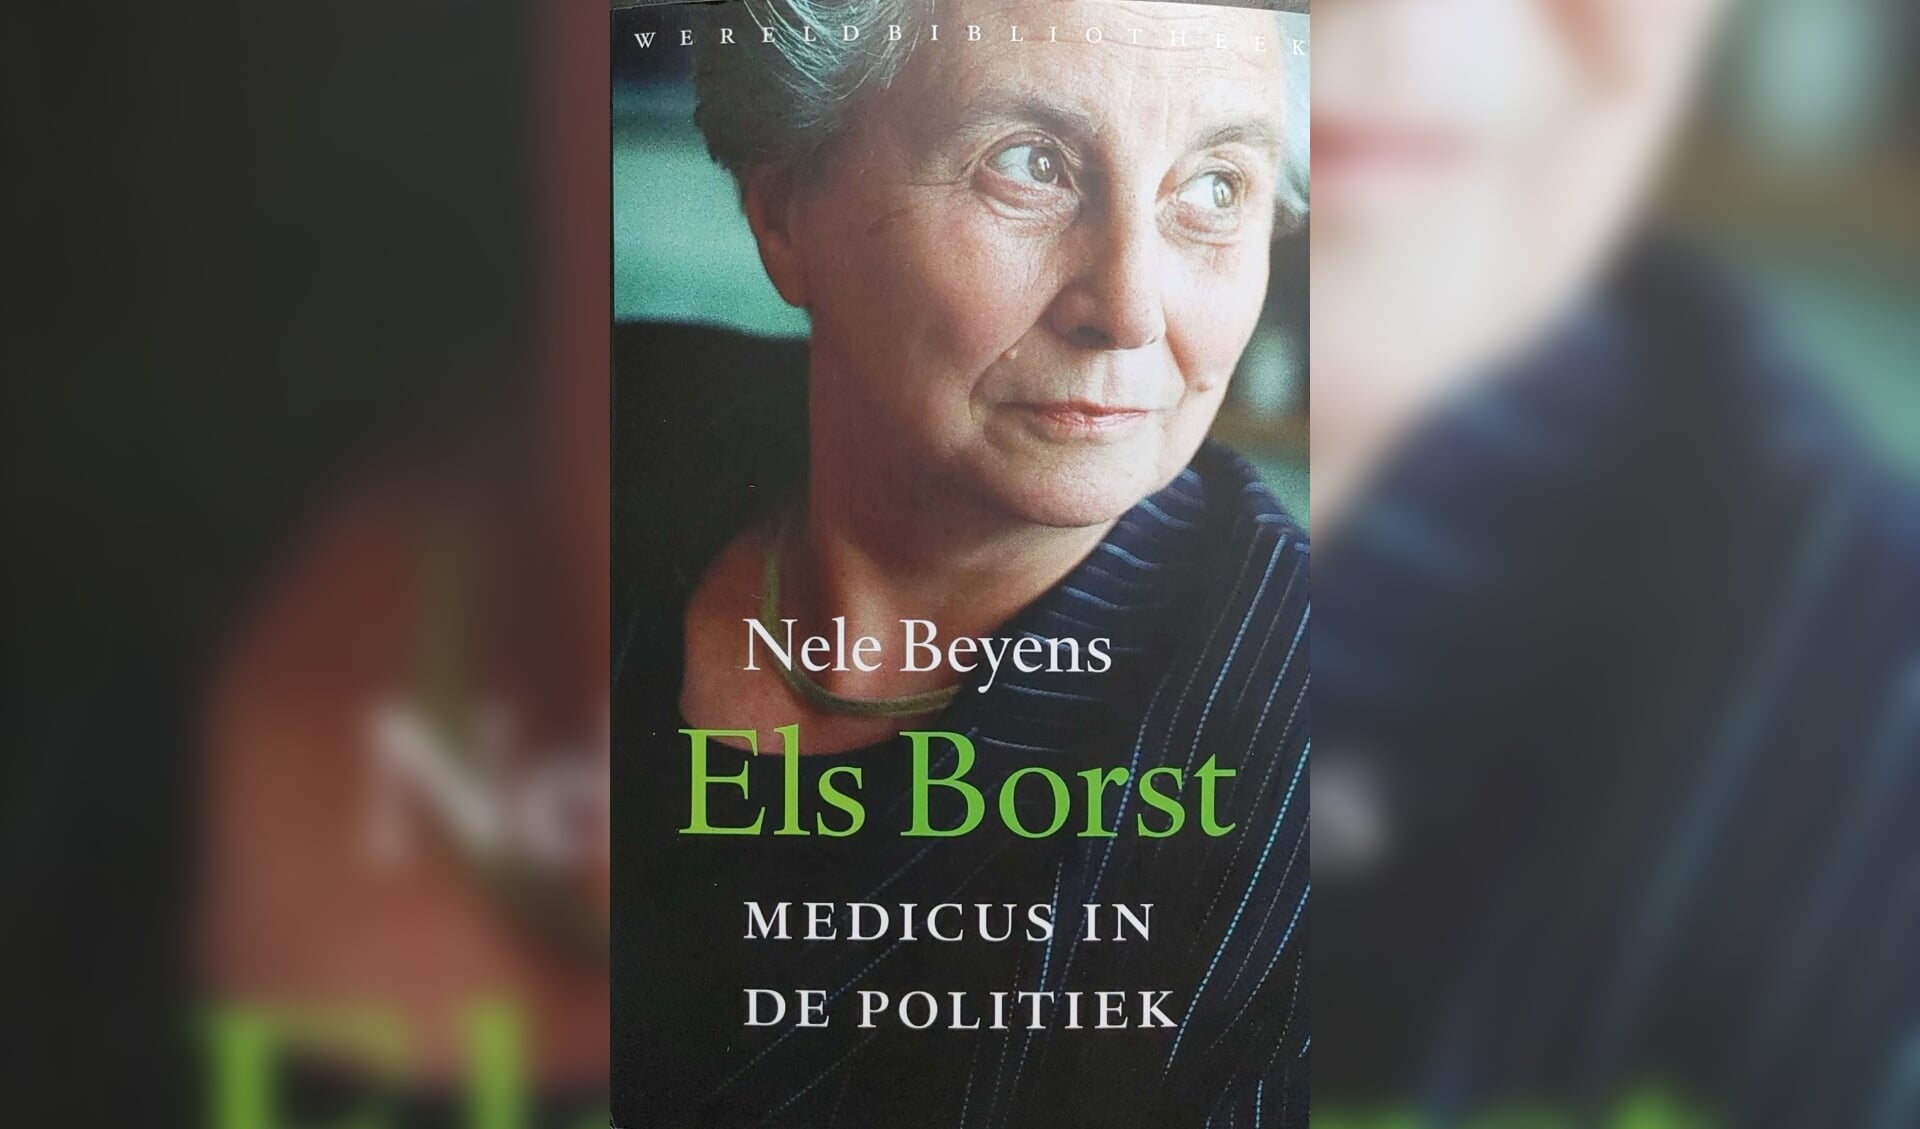 De voorzijde van het boek ‘Els Borst, medicus in de politiek’.